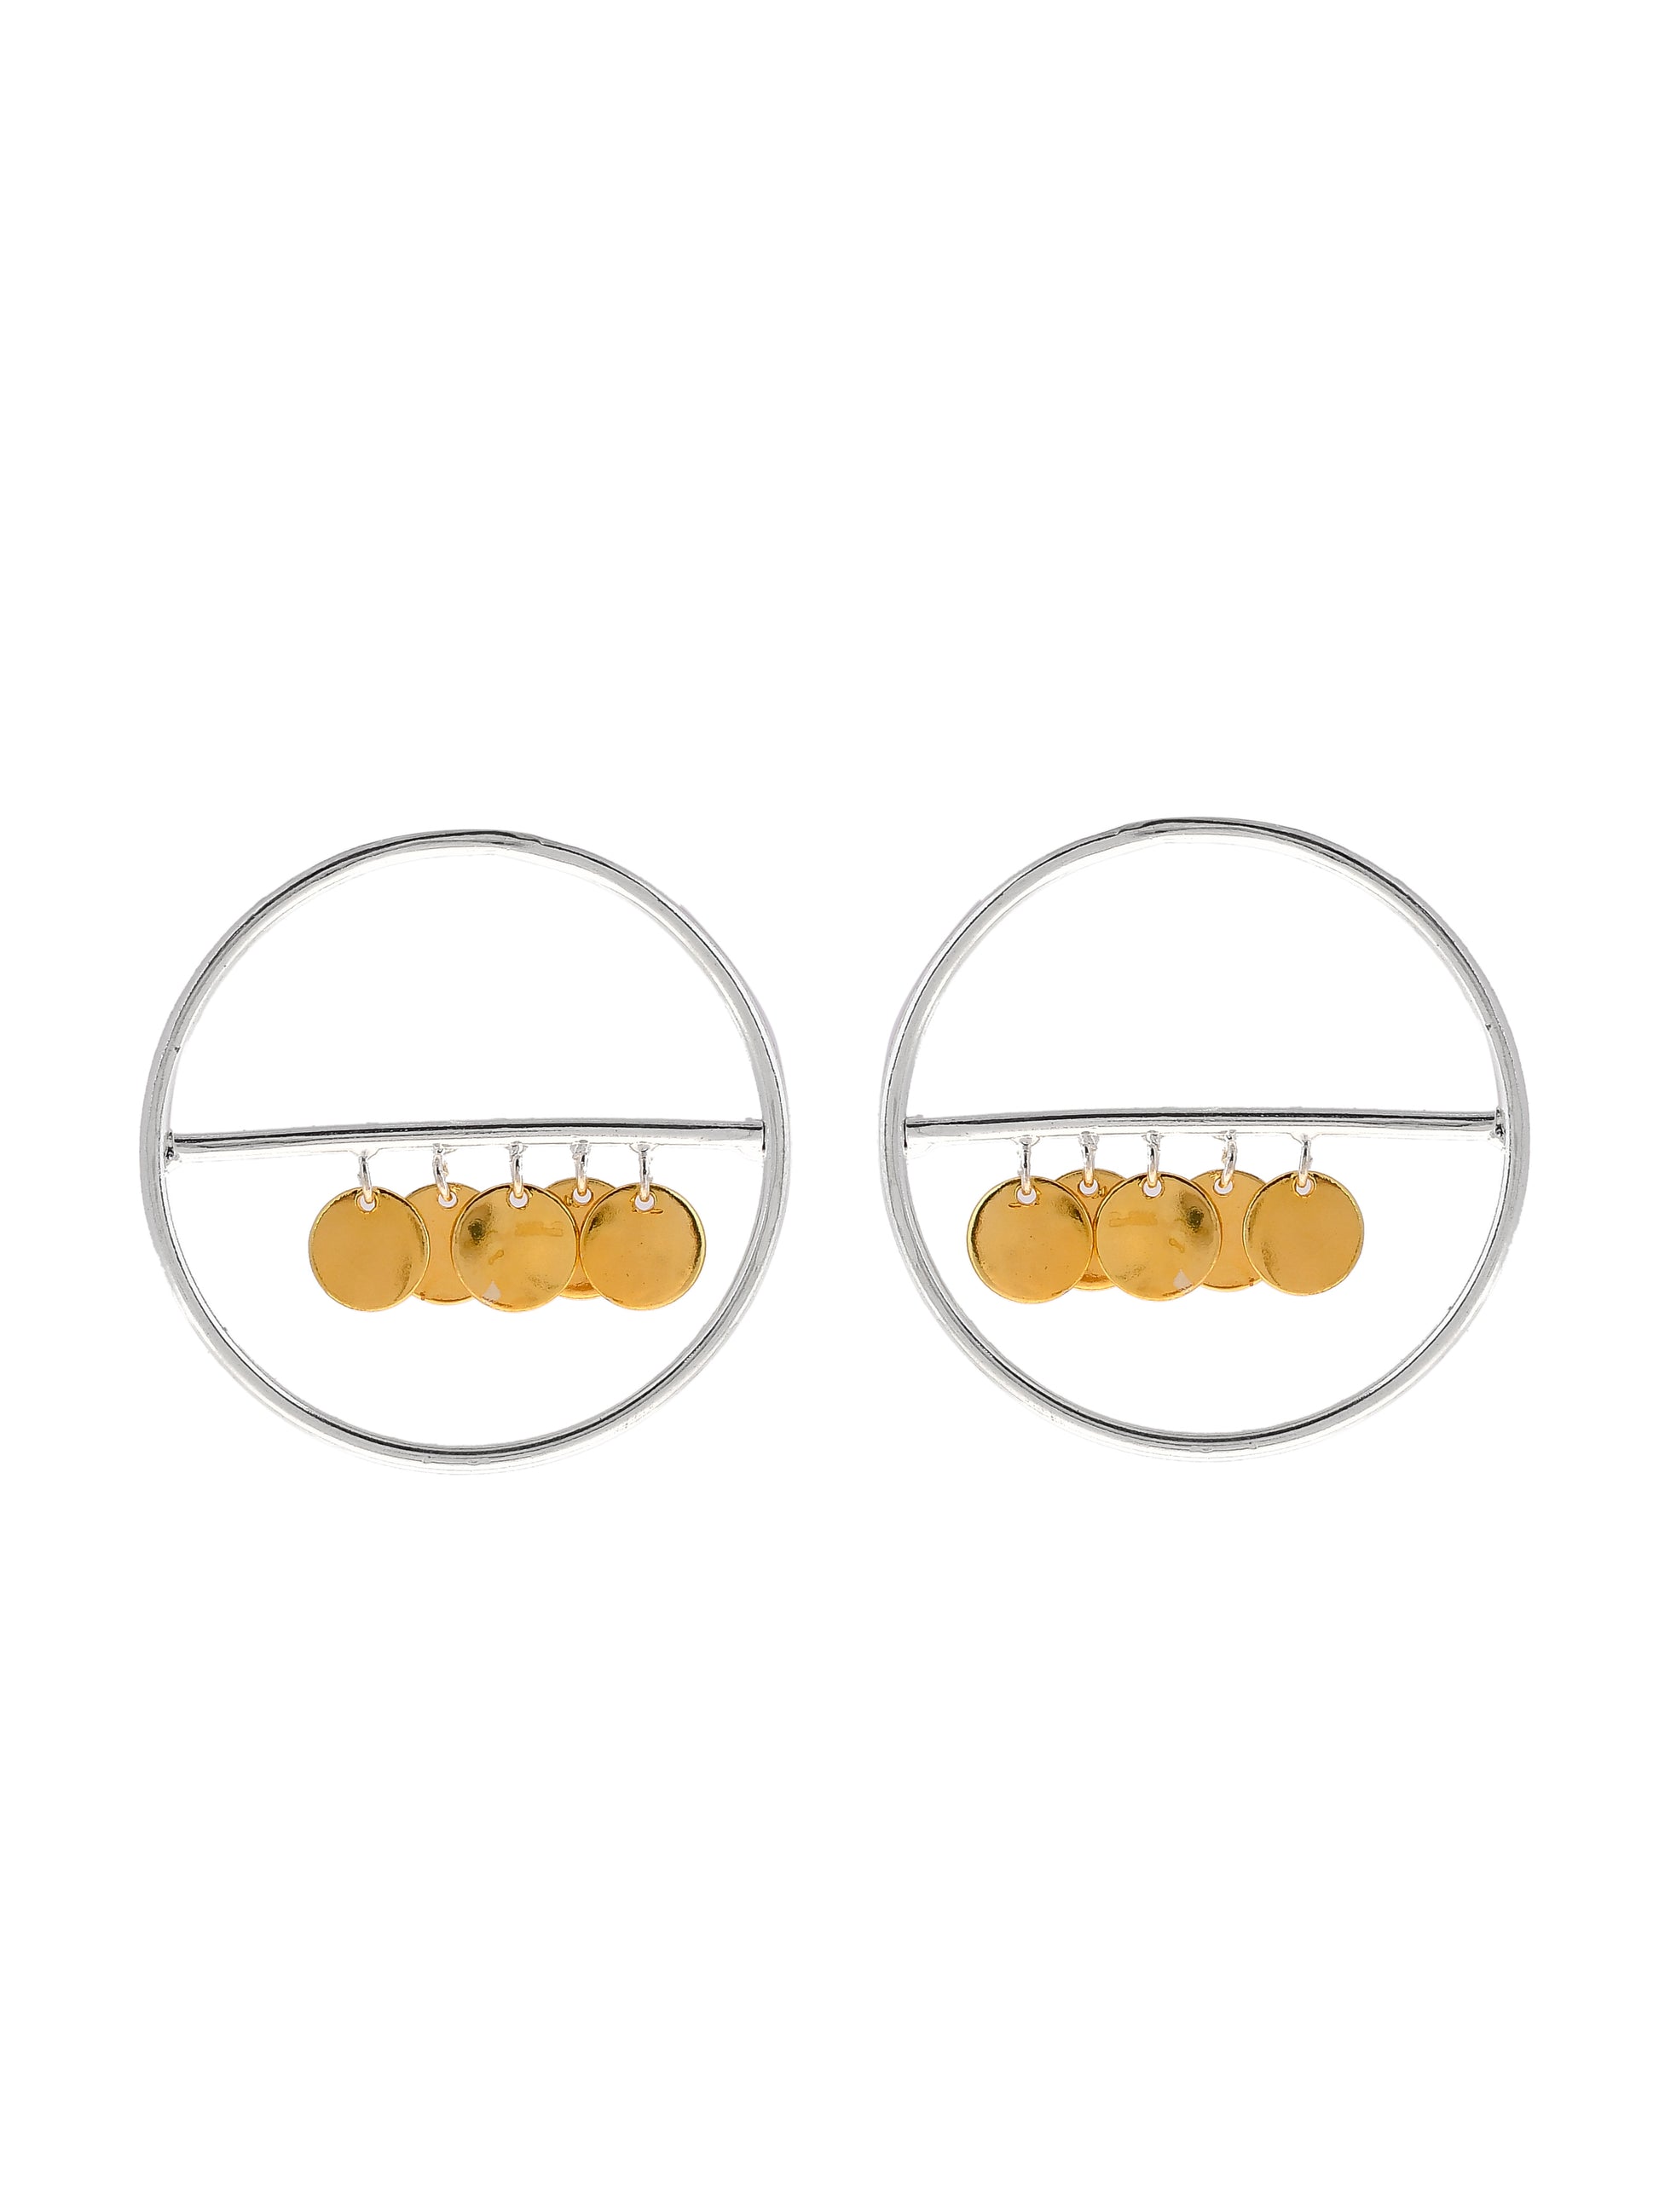 Western Circular Hoop earrings